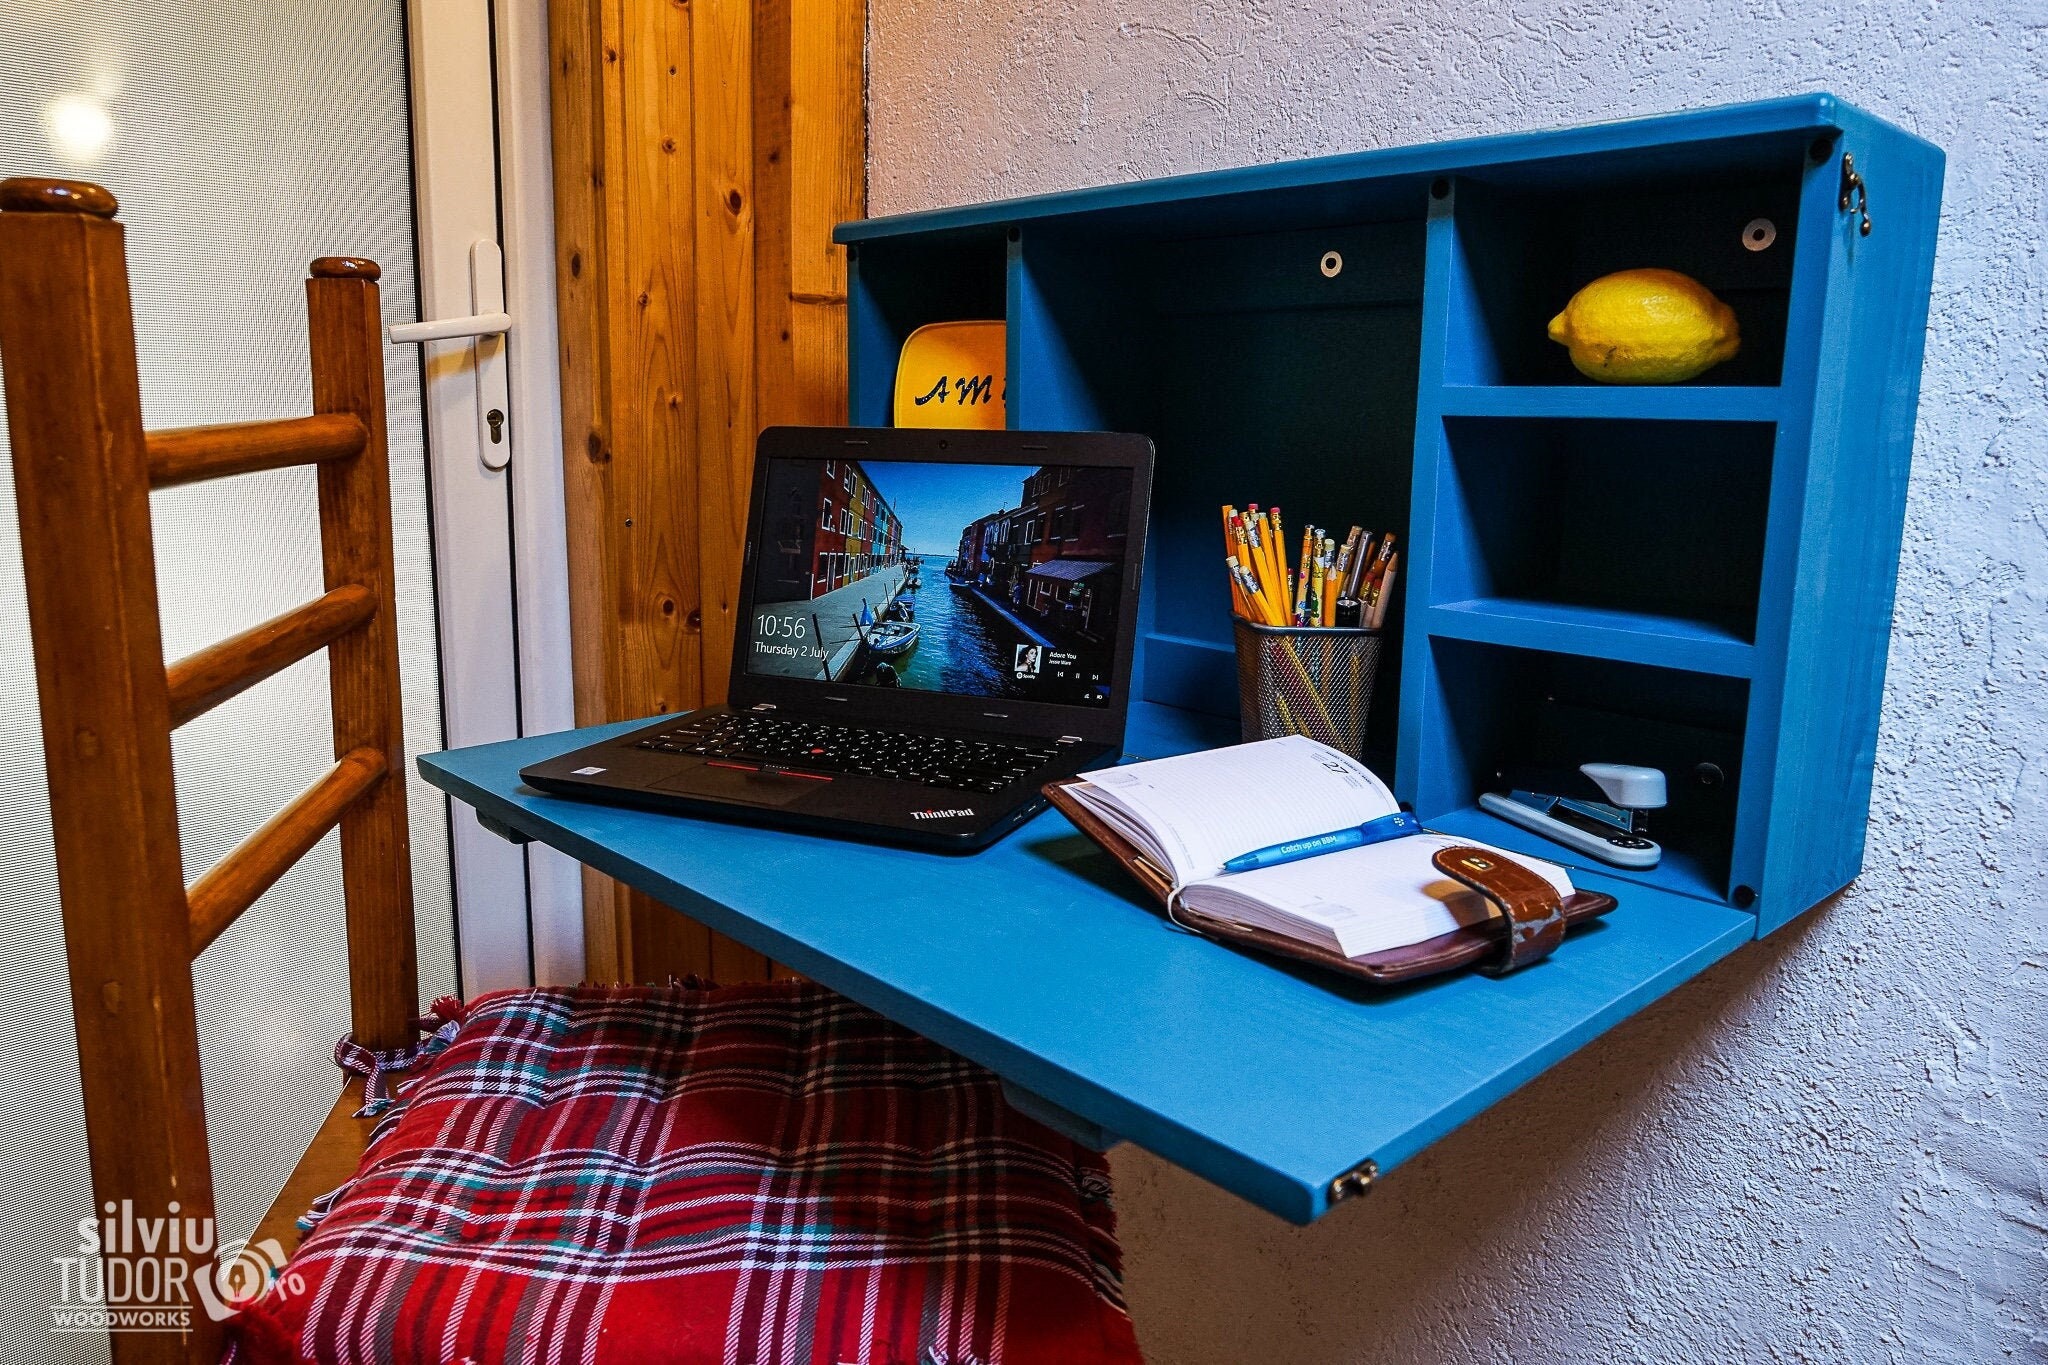 Mesa plegable de pared en madera, mesa de comedor invisible plegable,  escritorio flotante plegable para laptop, escritorio colgante para niños